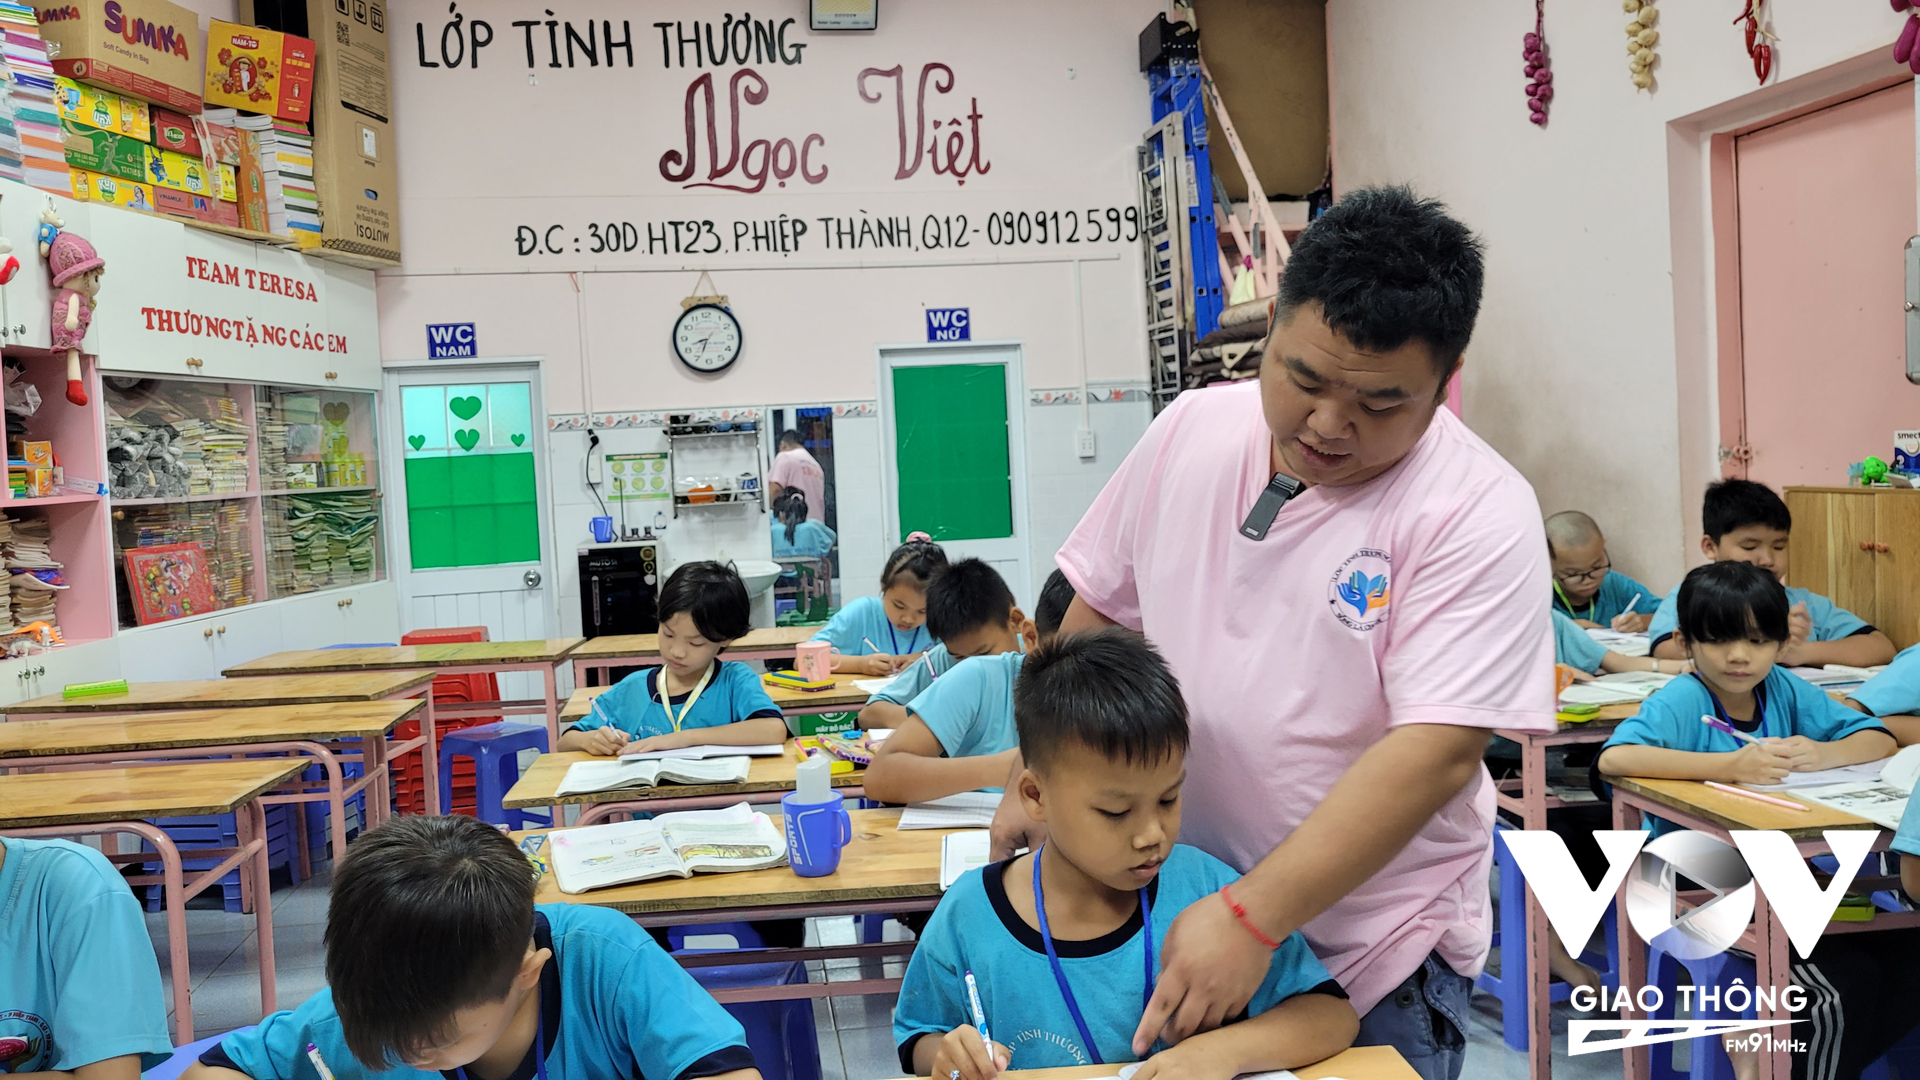 Cách đây 15 năm, anh Huỳnh Quang Khải - một hướng dẫn viên du lịch đã mở ra lớp học tình thương này. Đến nay, cũng gần 1.000 học sinh từ lớp học tình thương Ngọc Việt biết chữ, có em sau đó đến 15-16 tuổi vào các trường nghề học thêm, từ đây cũng thêm nhiều cuộc đời bước ra ánh sáng.